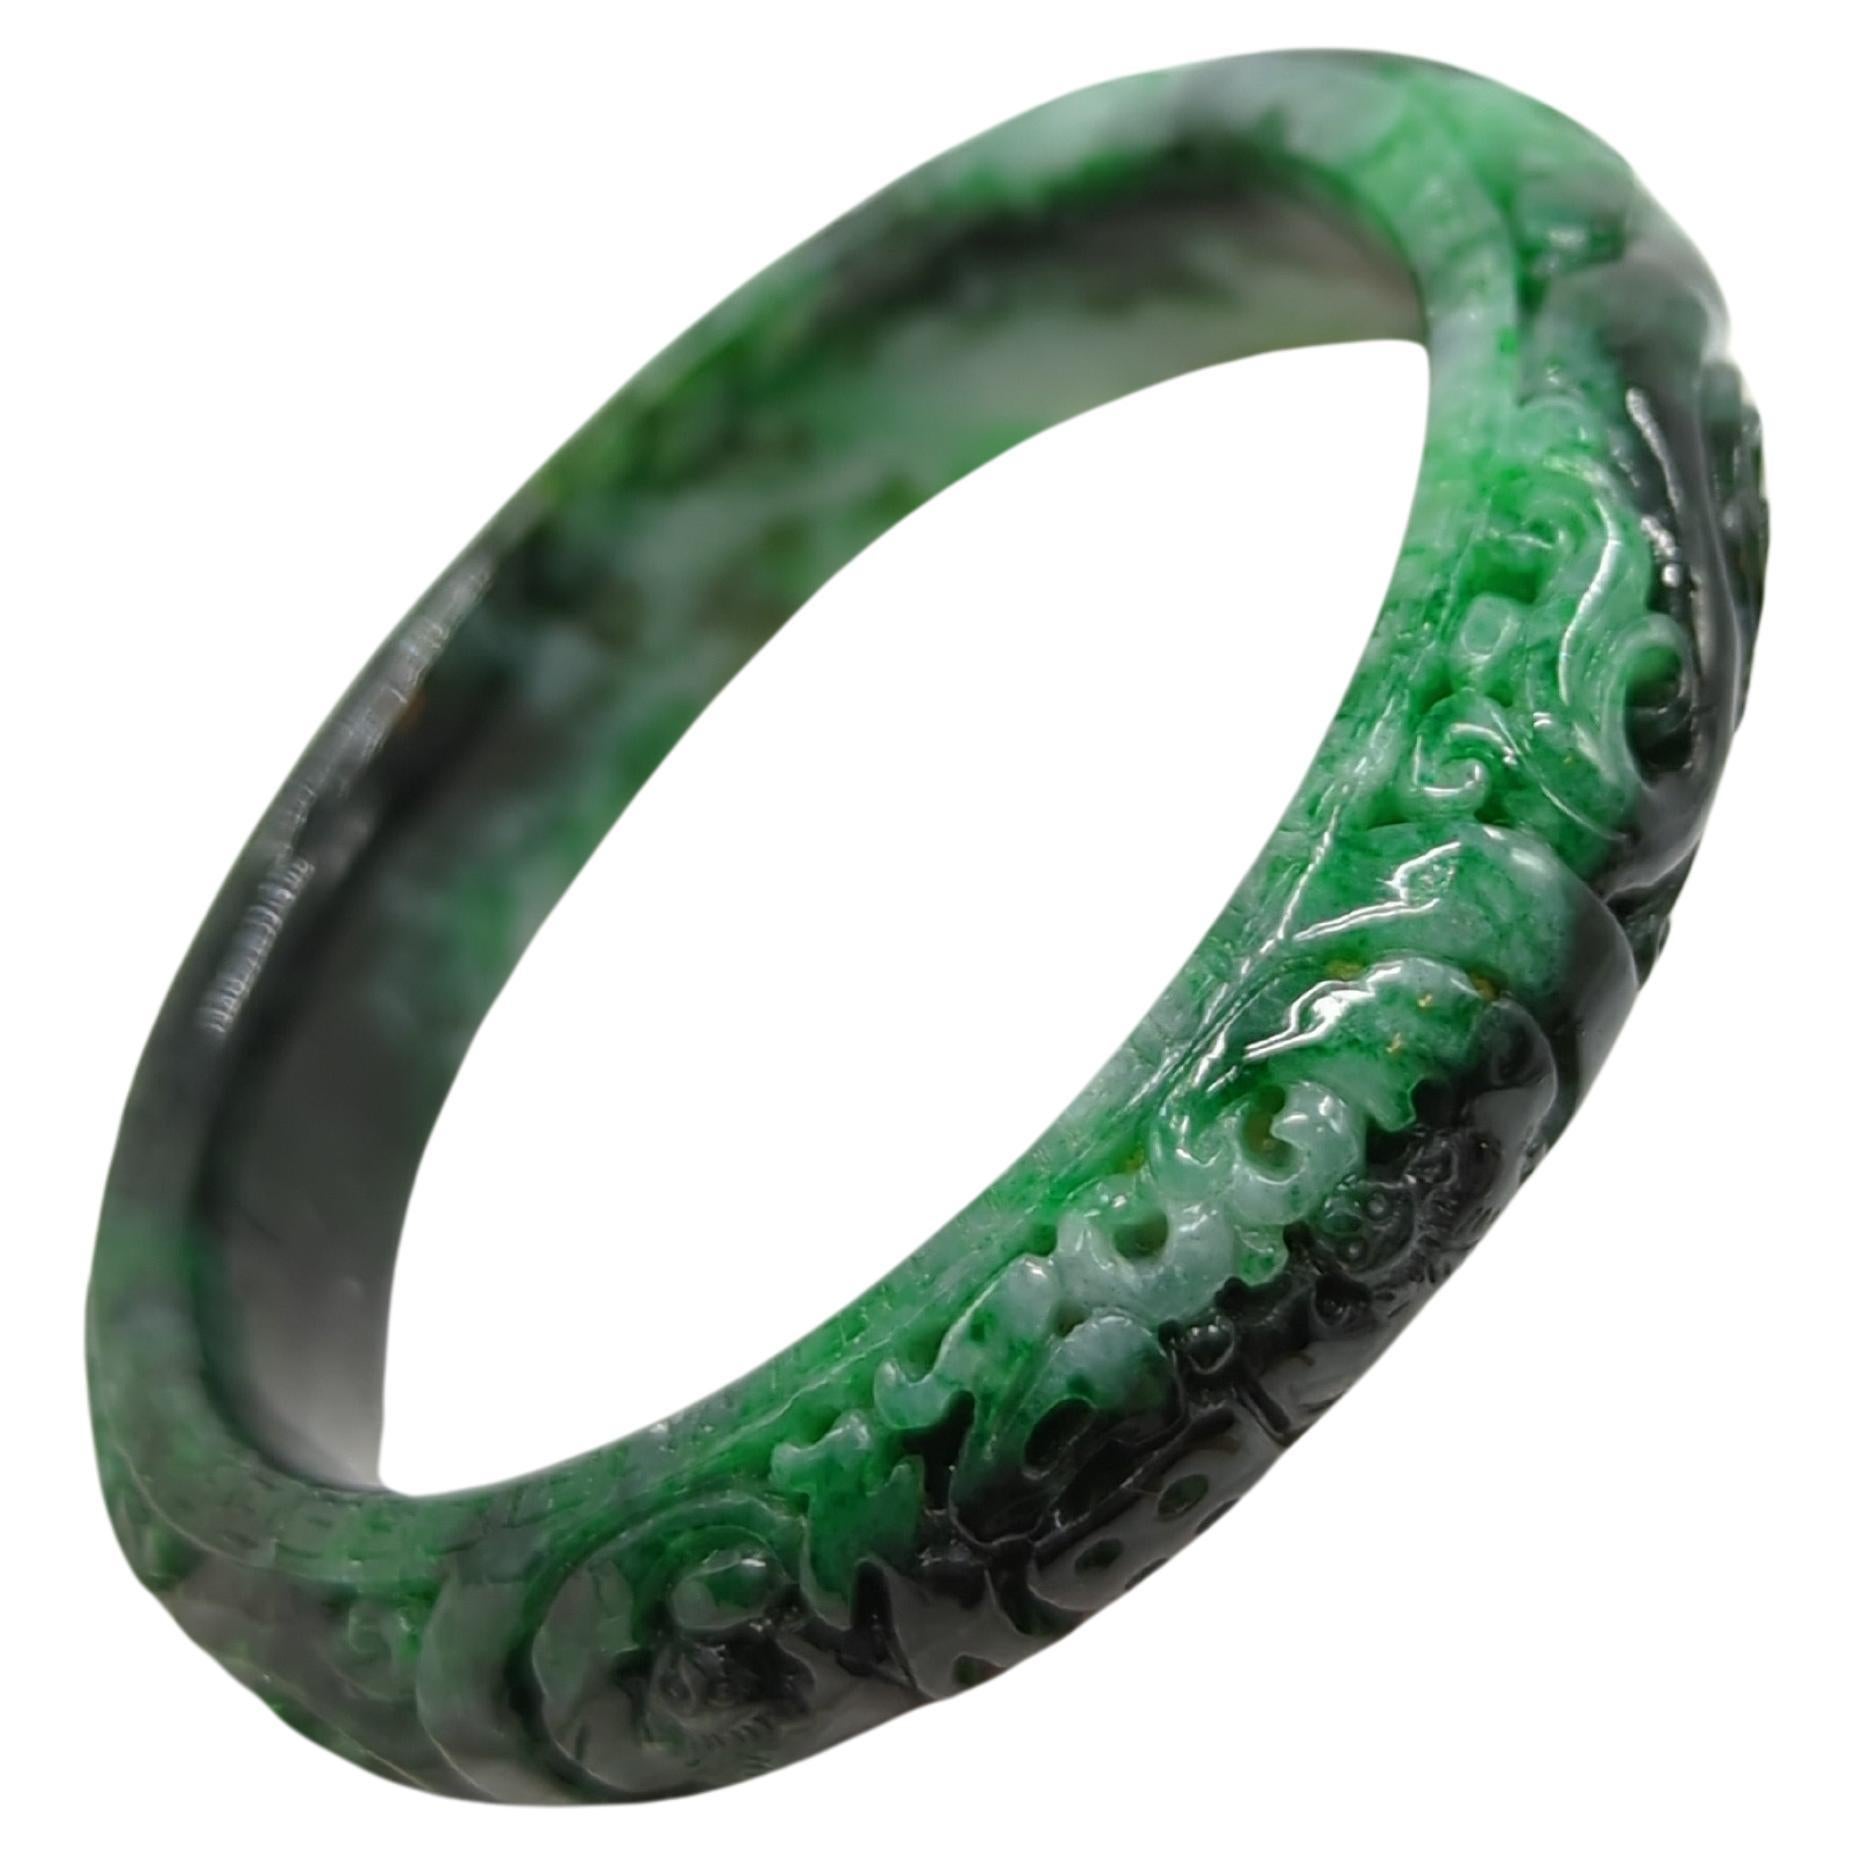 Un bracelet en jadéite naturelle chinoise vintage lourdement sculptée, avec de riches couleurs naturelles tachetées allant du vert pâle au vert d'encre foncé en passant par le vert émeraude.

ID : 60mm
Diamètre extérieur : 79 mm
Largeur : 14,5